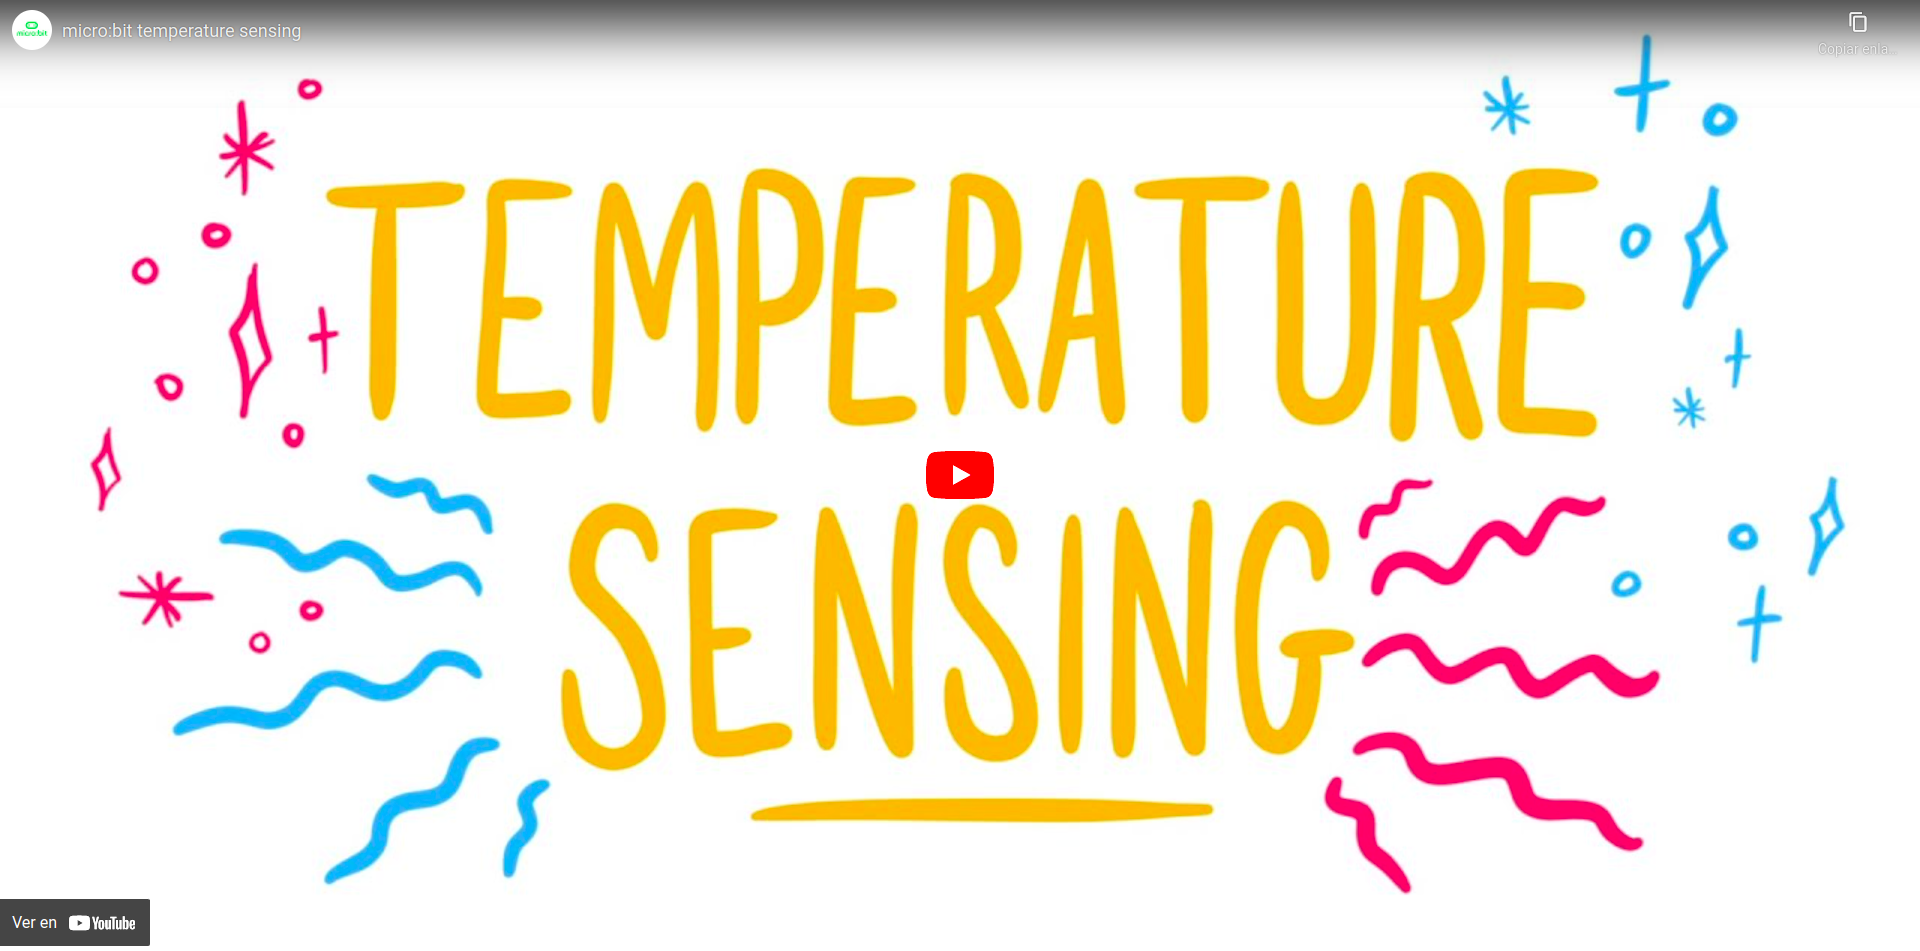 Vídeo que describe el funcionamiento del sensor de temperatura de la placa micro:bit